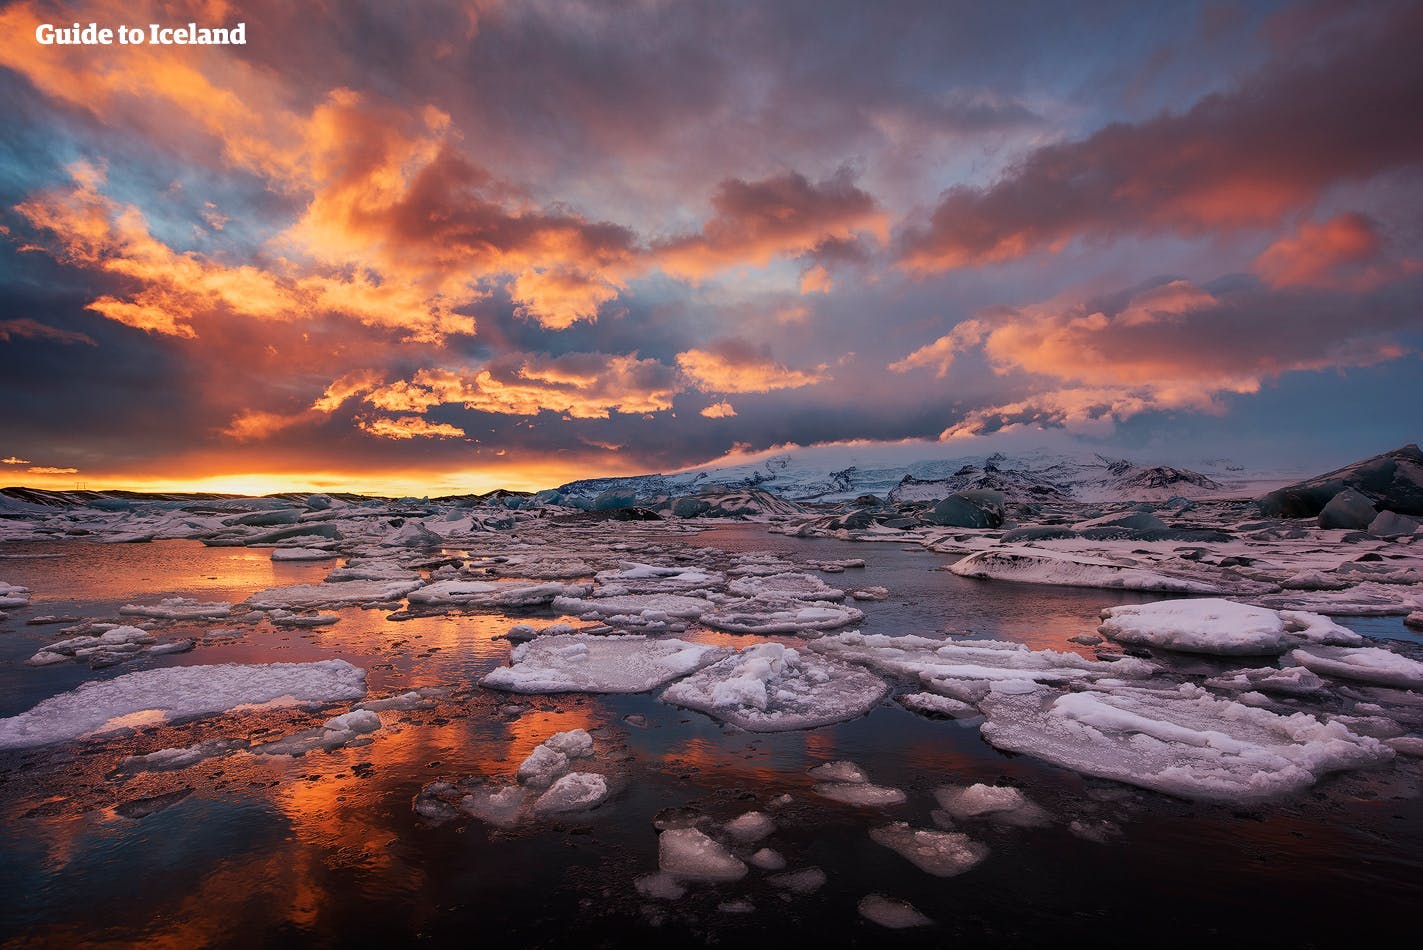 午夜阳光下的杰古沙龙冰河湖无比美丽。